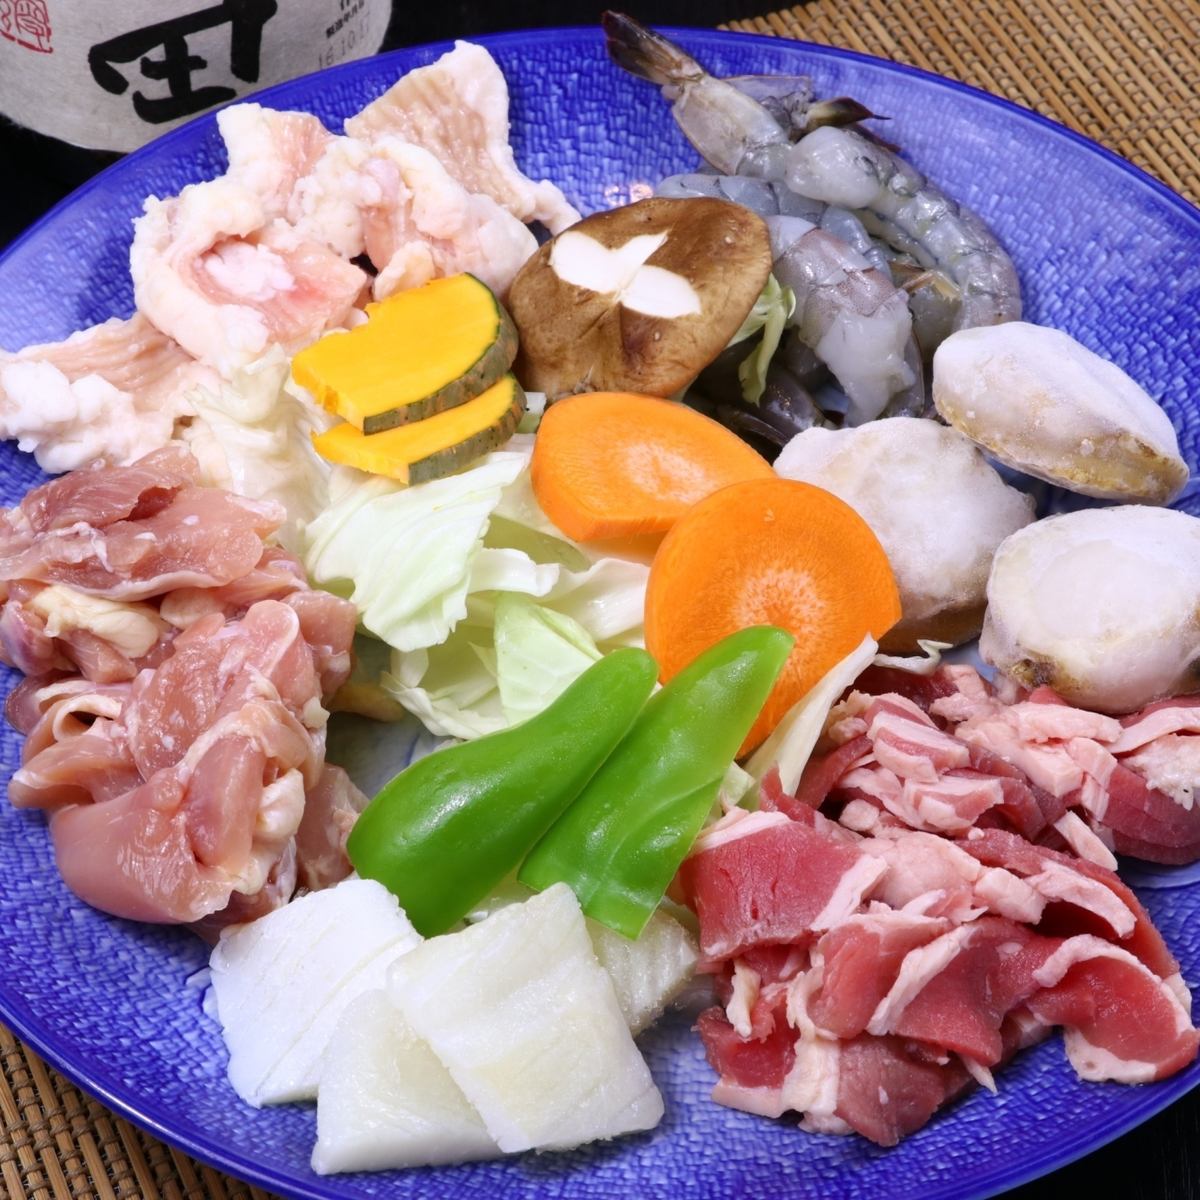 大分當地特色菜，如烤肉，琉球/ Toriten都可以隨意吃★適合學生和團體◎